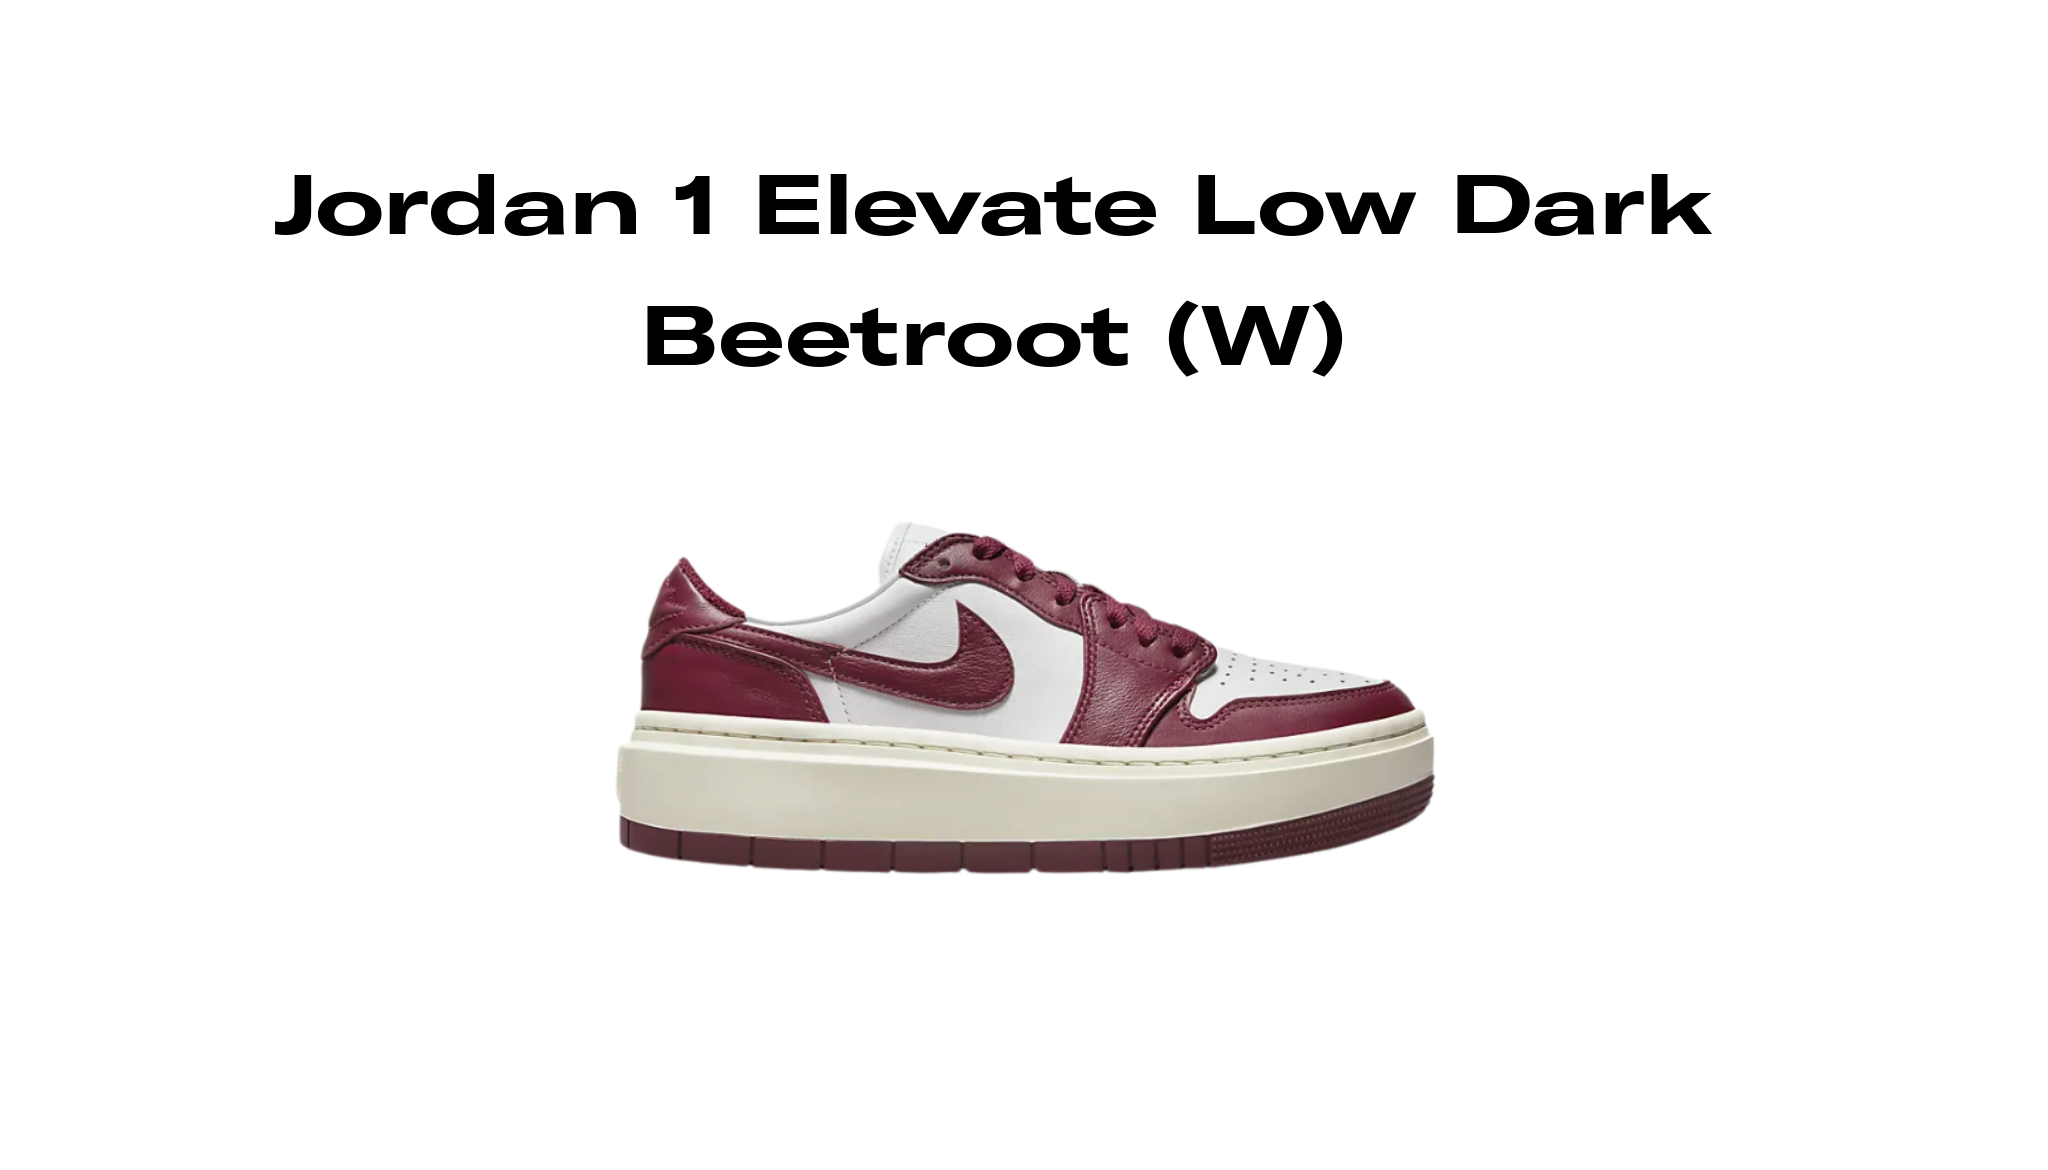 Jordan 1 Elevate Low Dark Beetroot (W), Raffles and Release Date